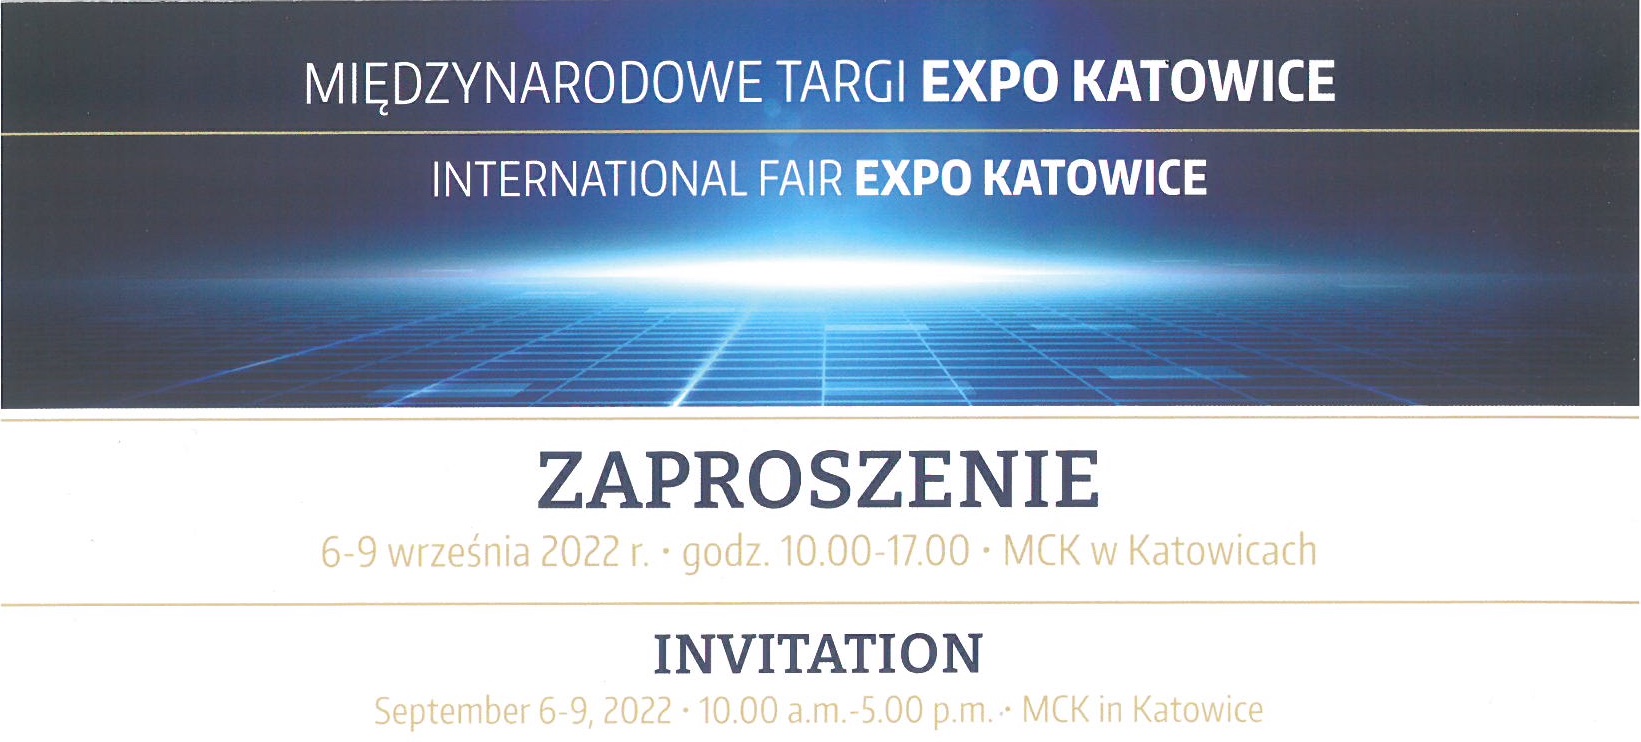 Международная Выставка Горной Промышленности, Энергетики и Металлургии 2022